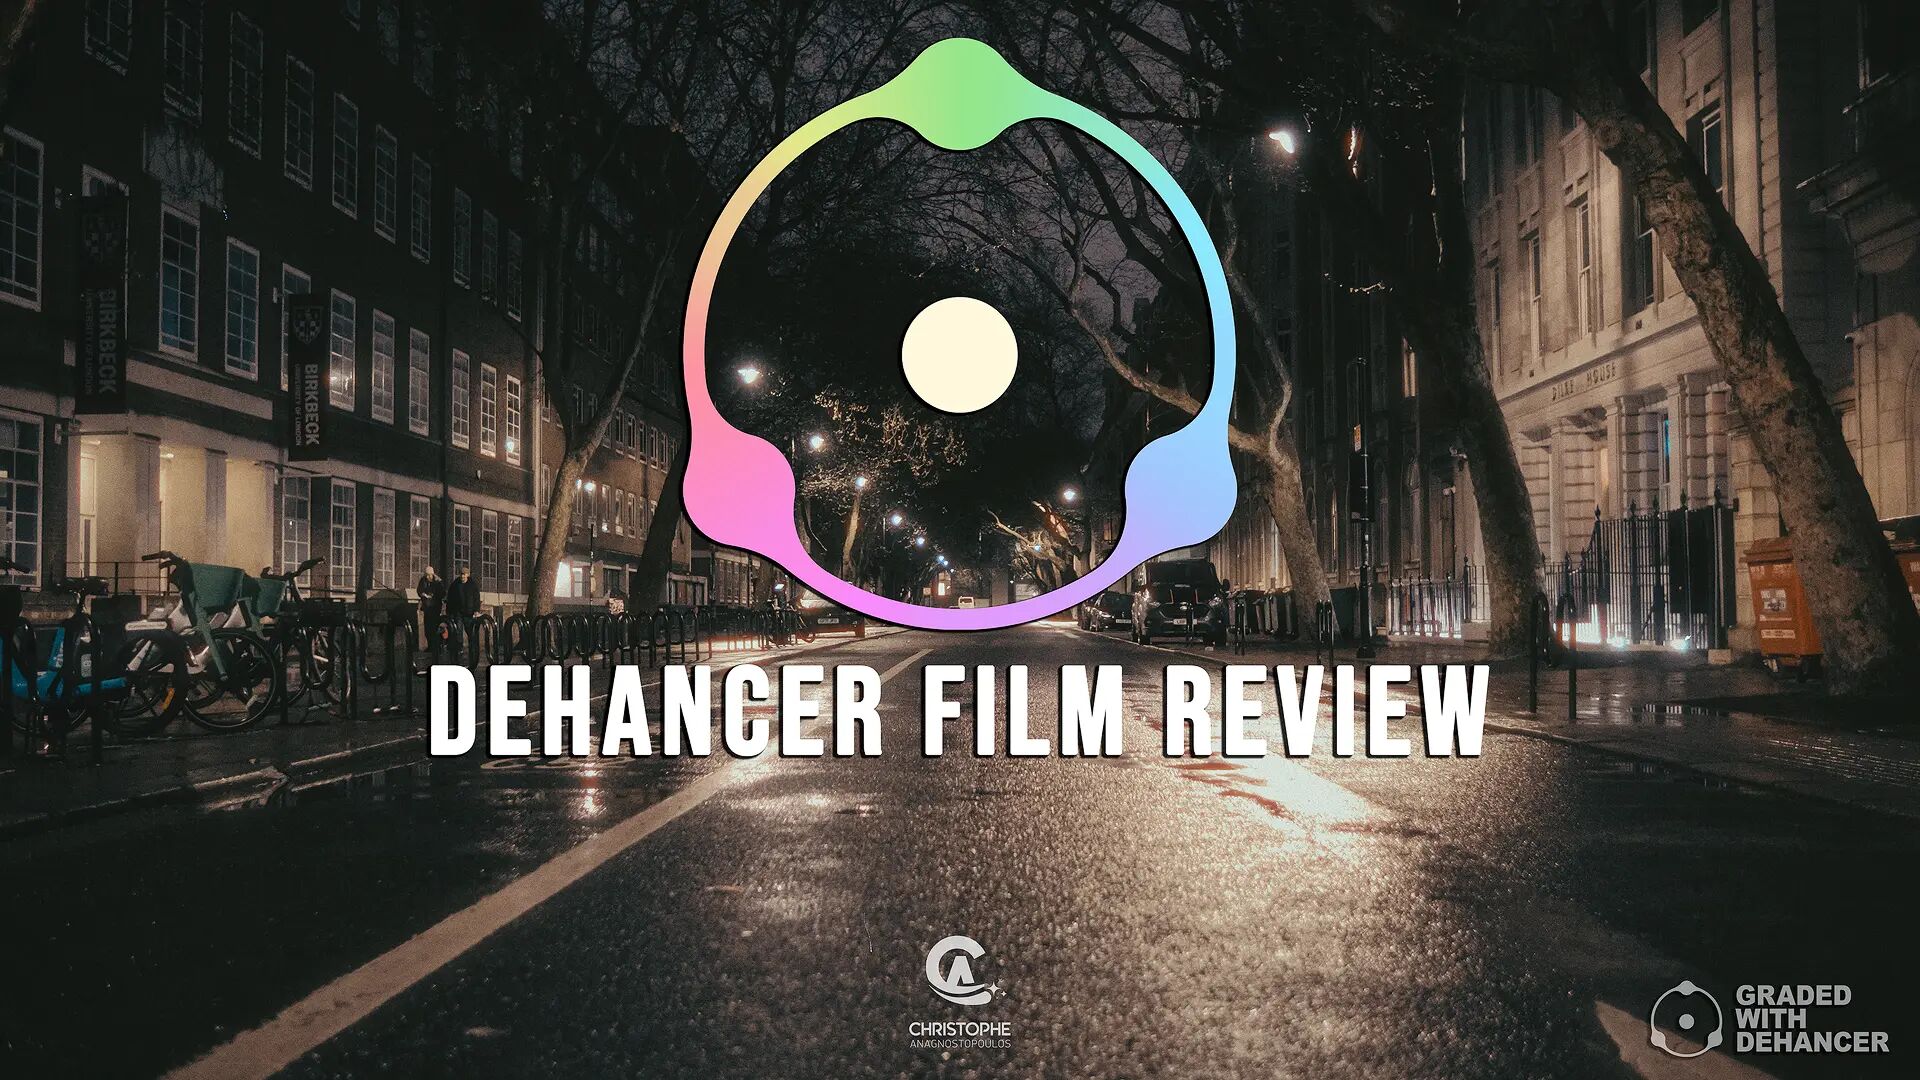 Dehancer Film Review